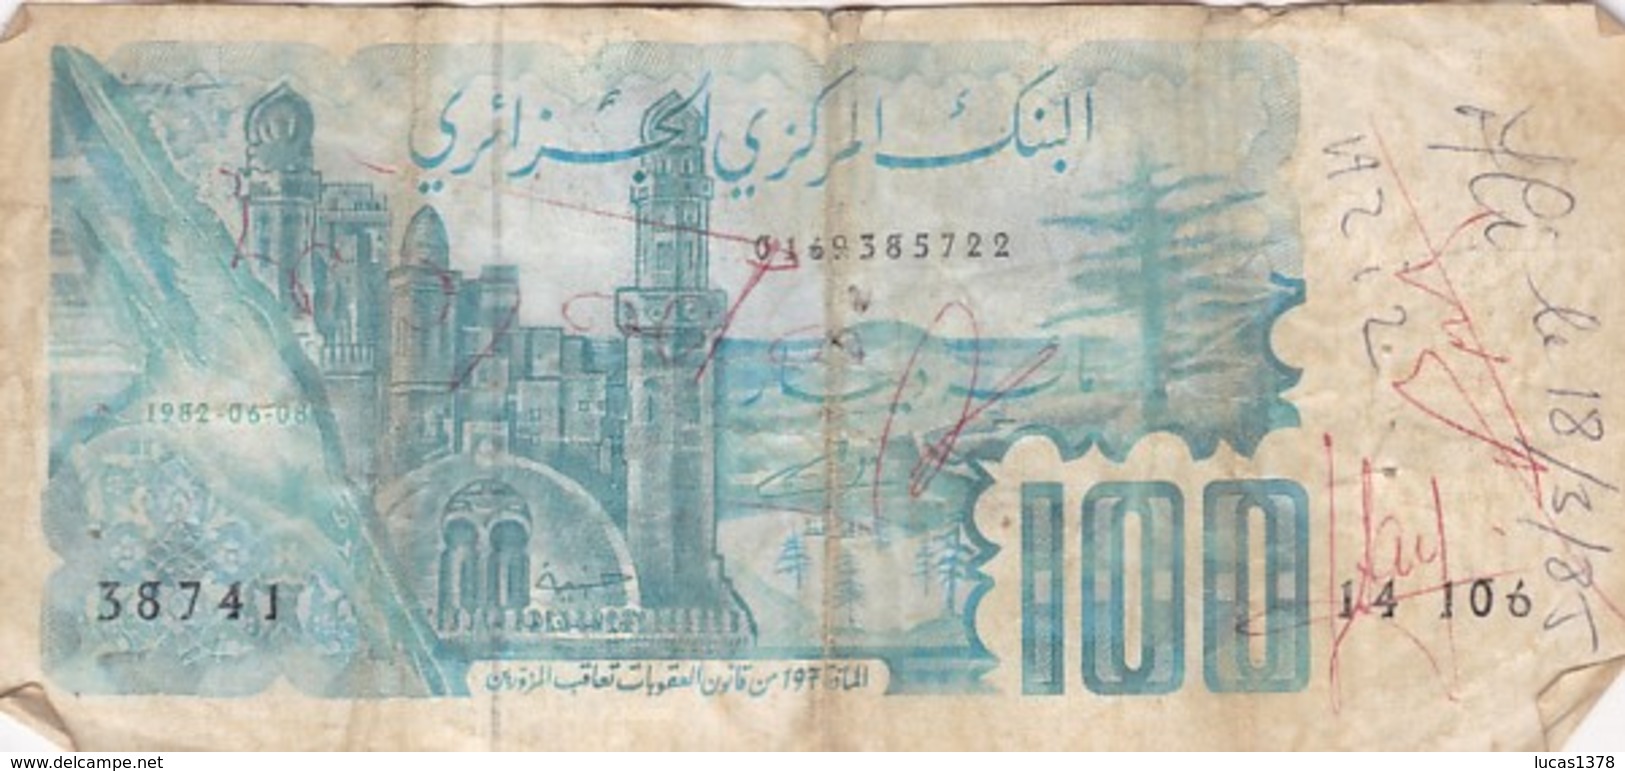 Algérie -- Algeria 100 DINARS 1982 - Algérie